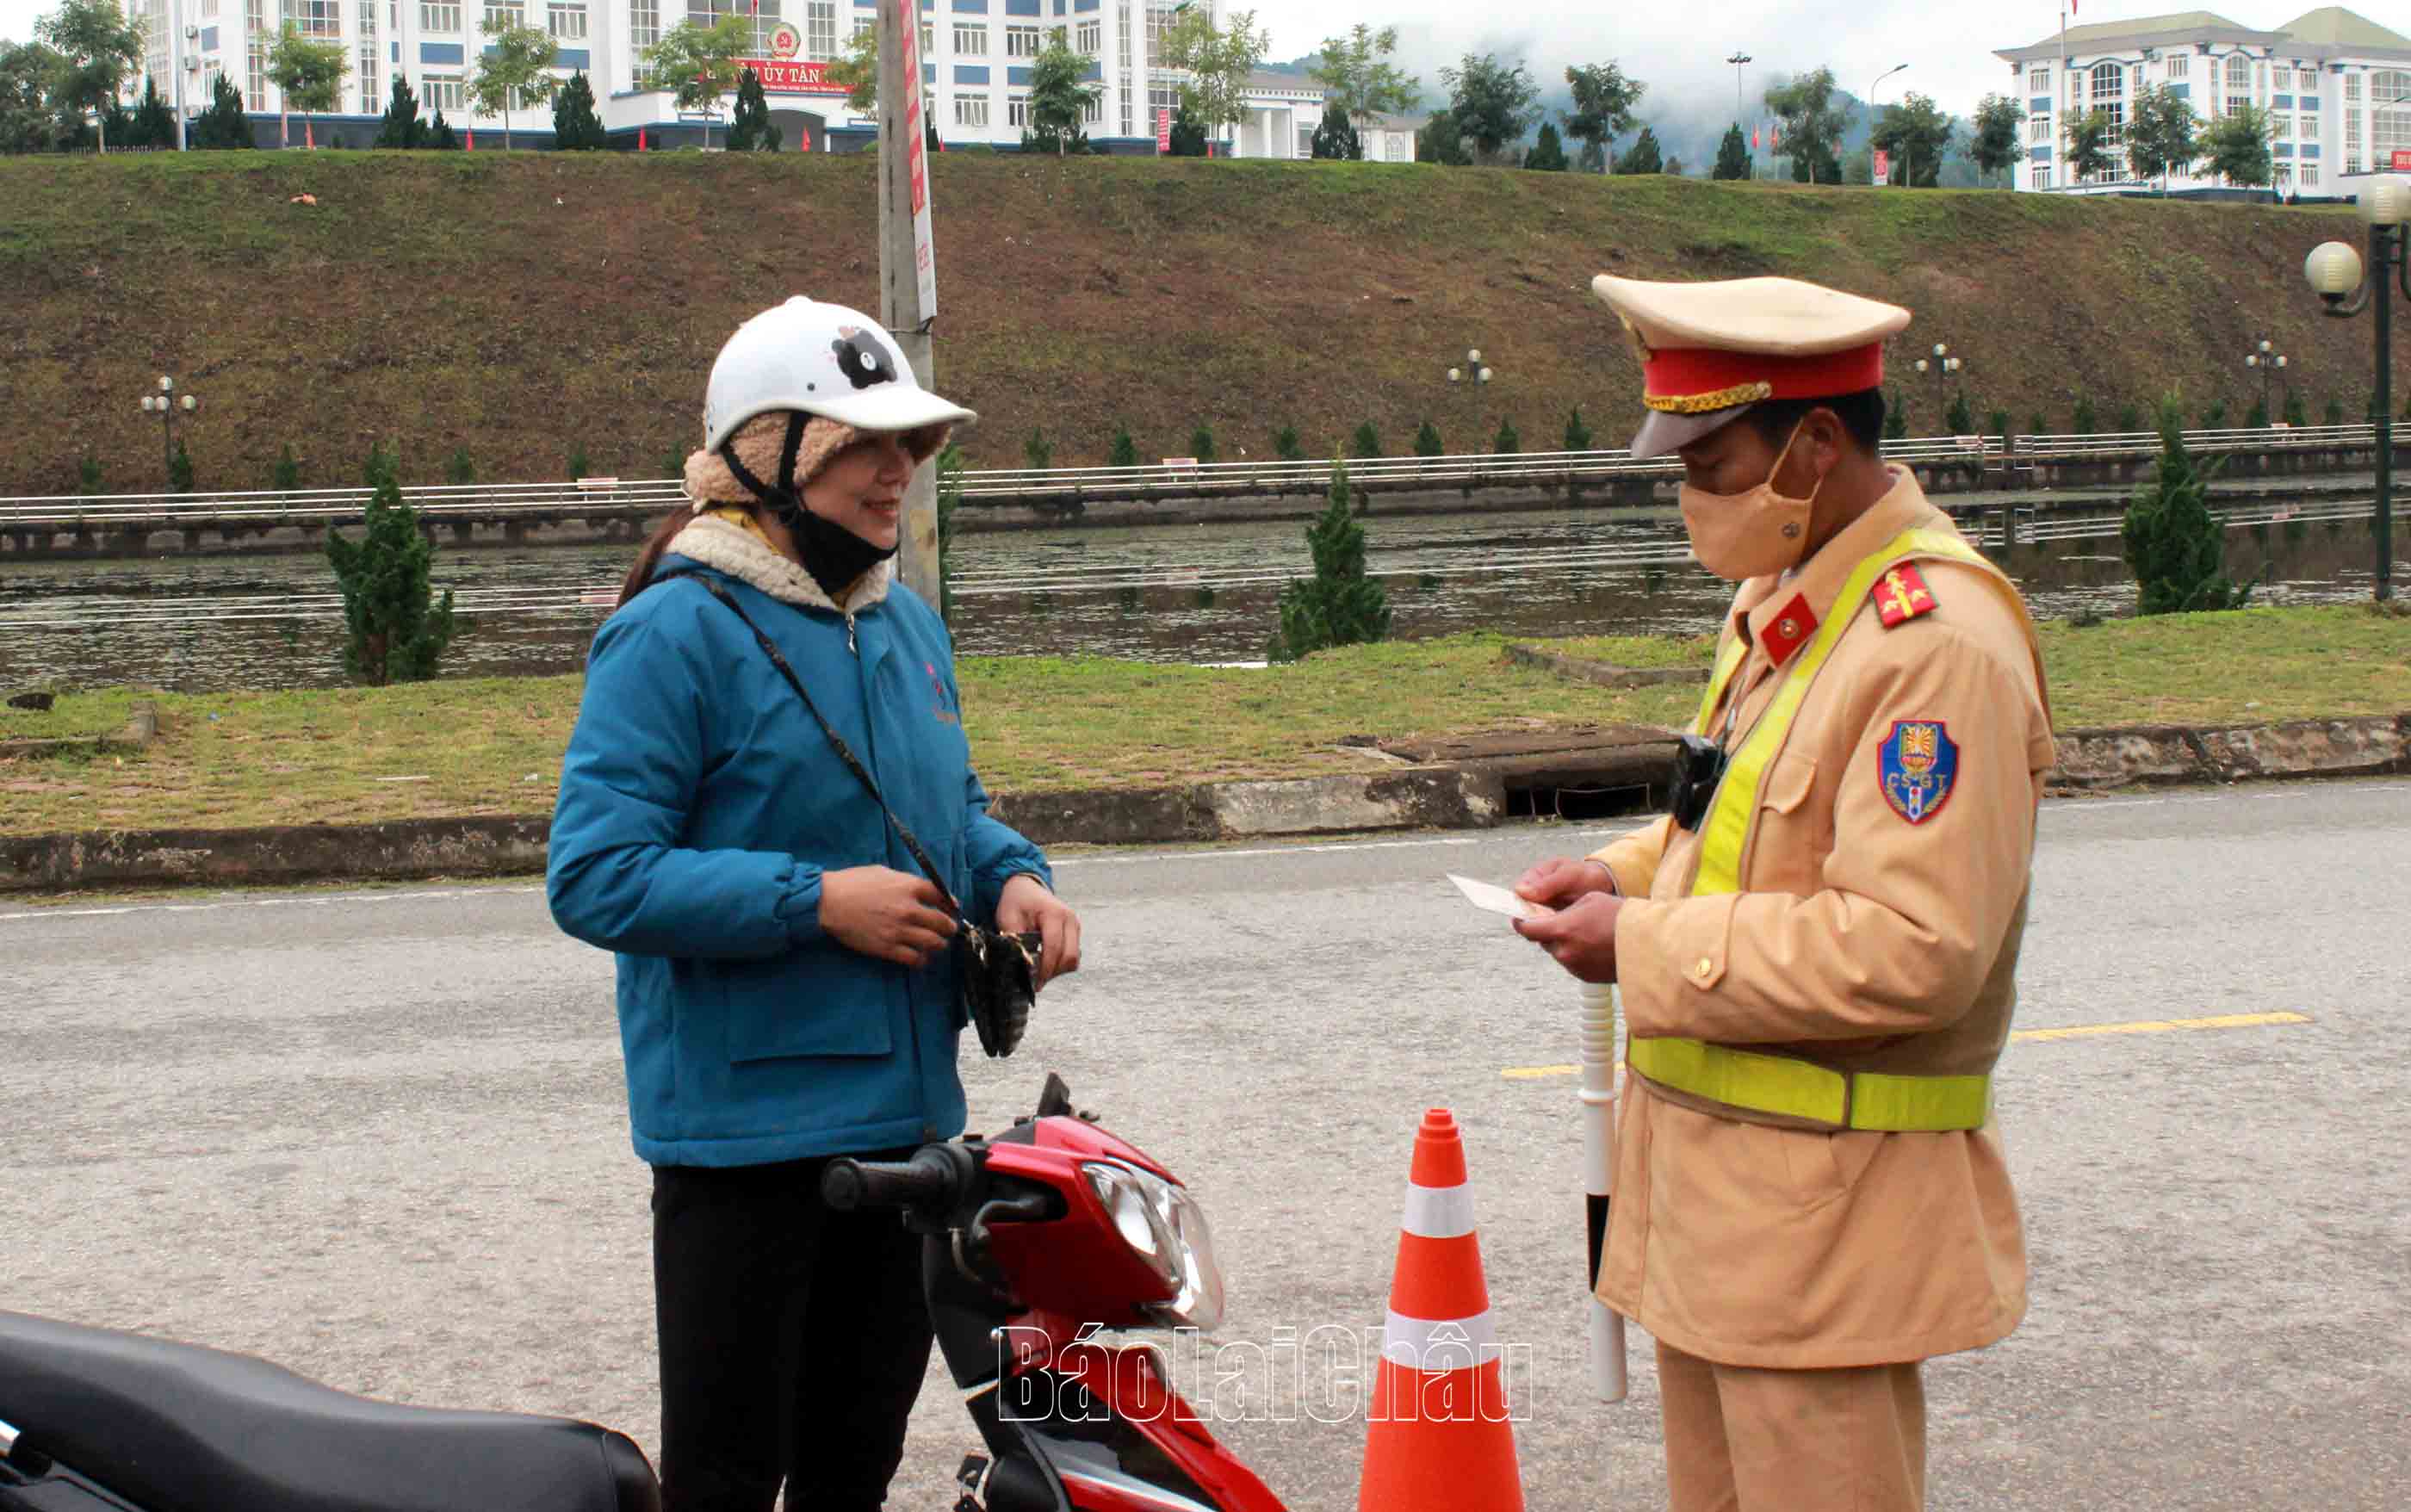 Cán bộ, chiến sĩ Đội CSGT - trật tự (Công an huyện Tân Uyên) kiểm tra hành chính người điều kiển xe mô-tô lưu thông trên đường.